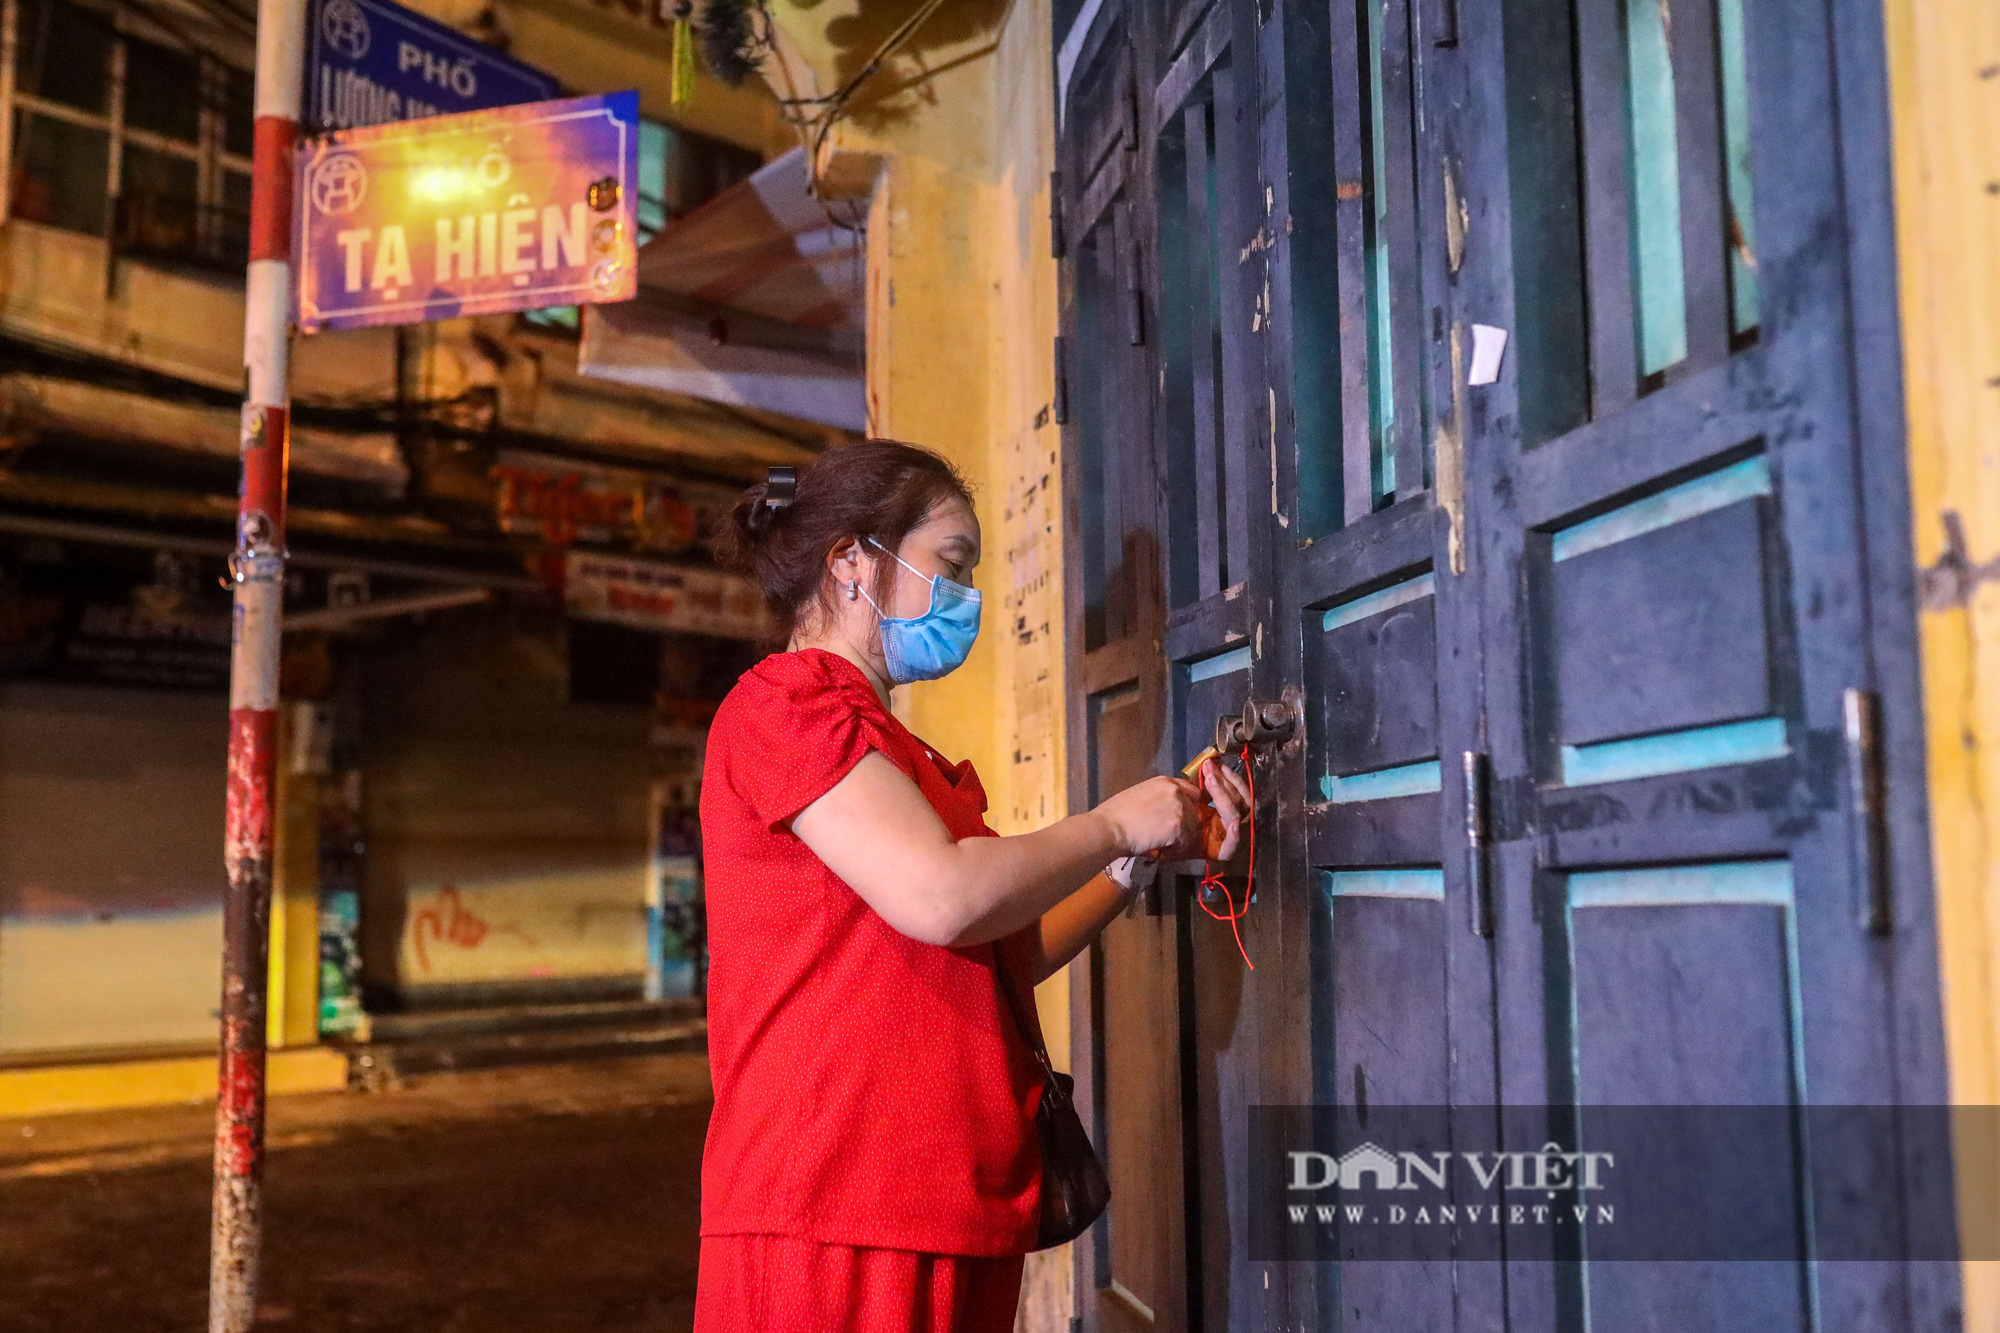 Hàng, quán ở Hà Nội đồng loạt thực hiện giãn cách trong đêm - Ảnh 7.